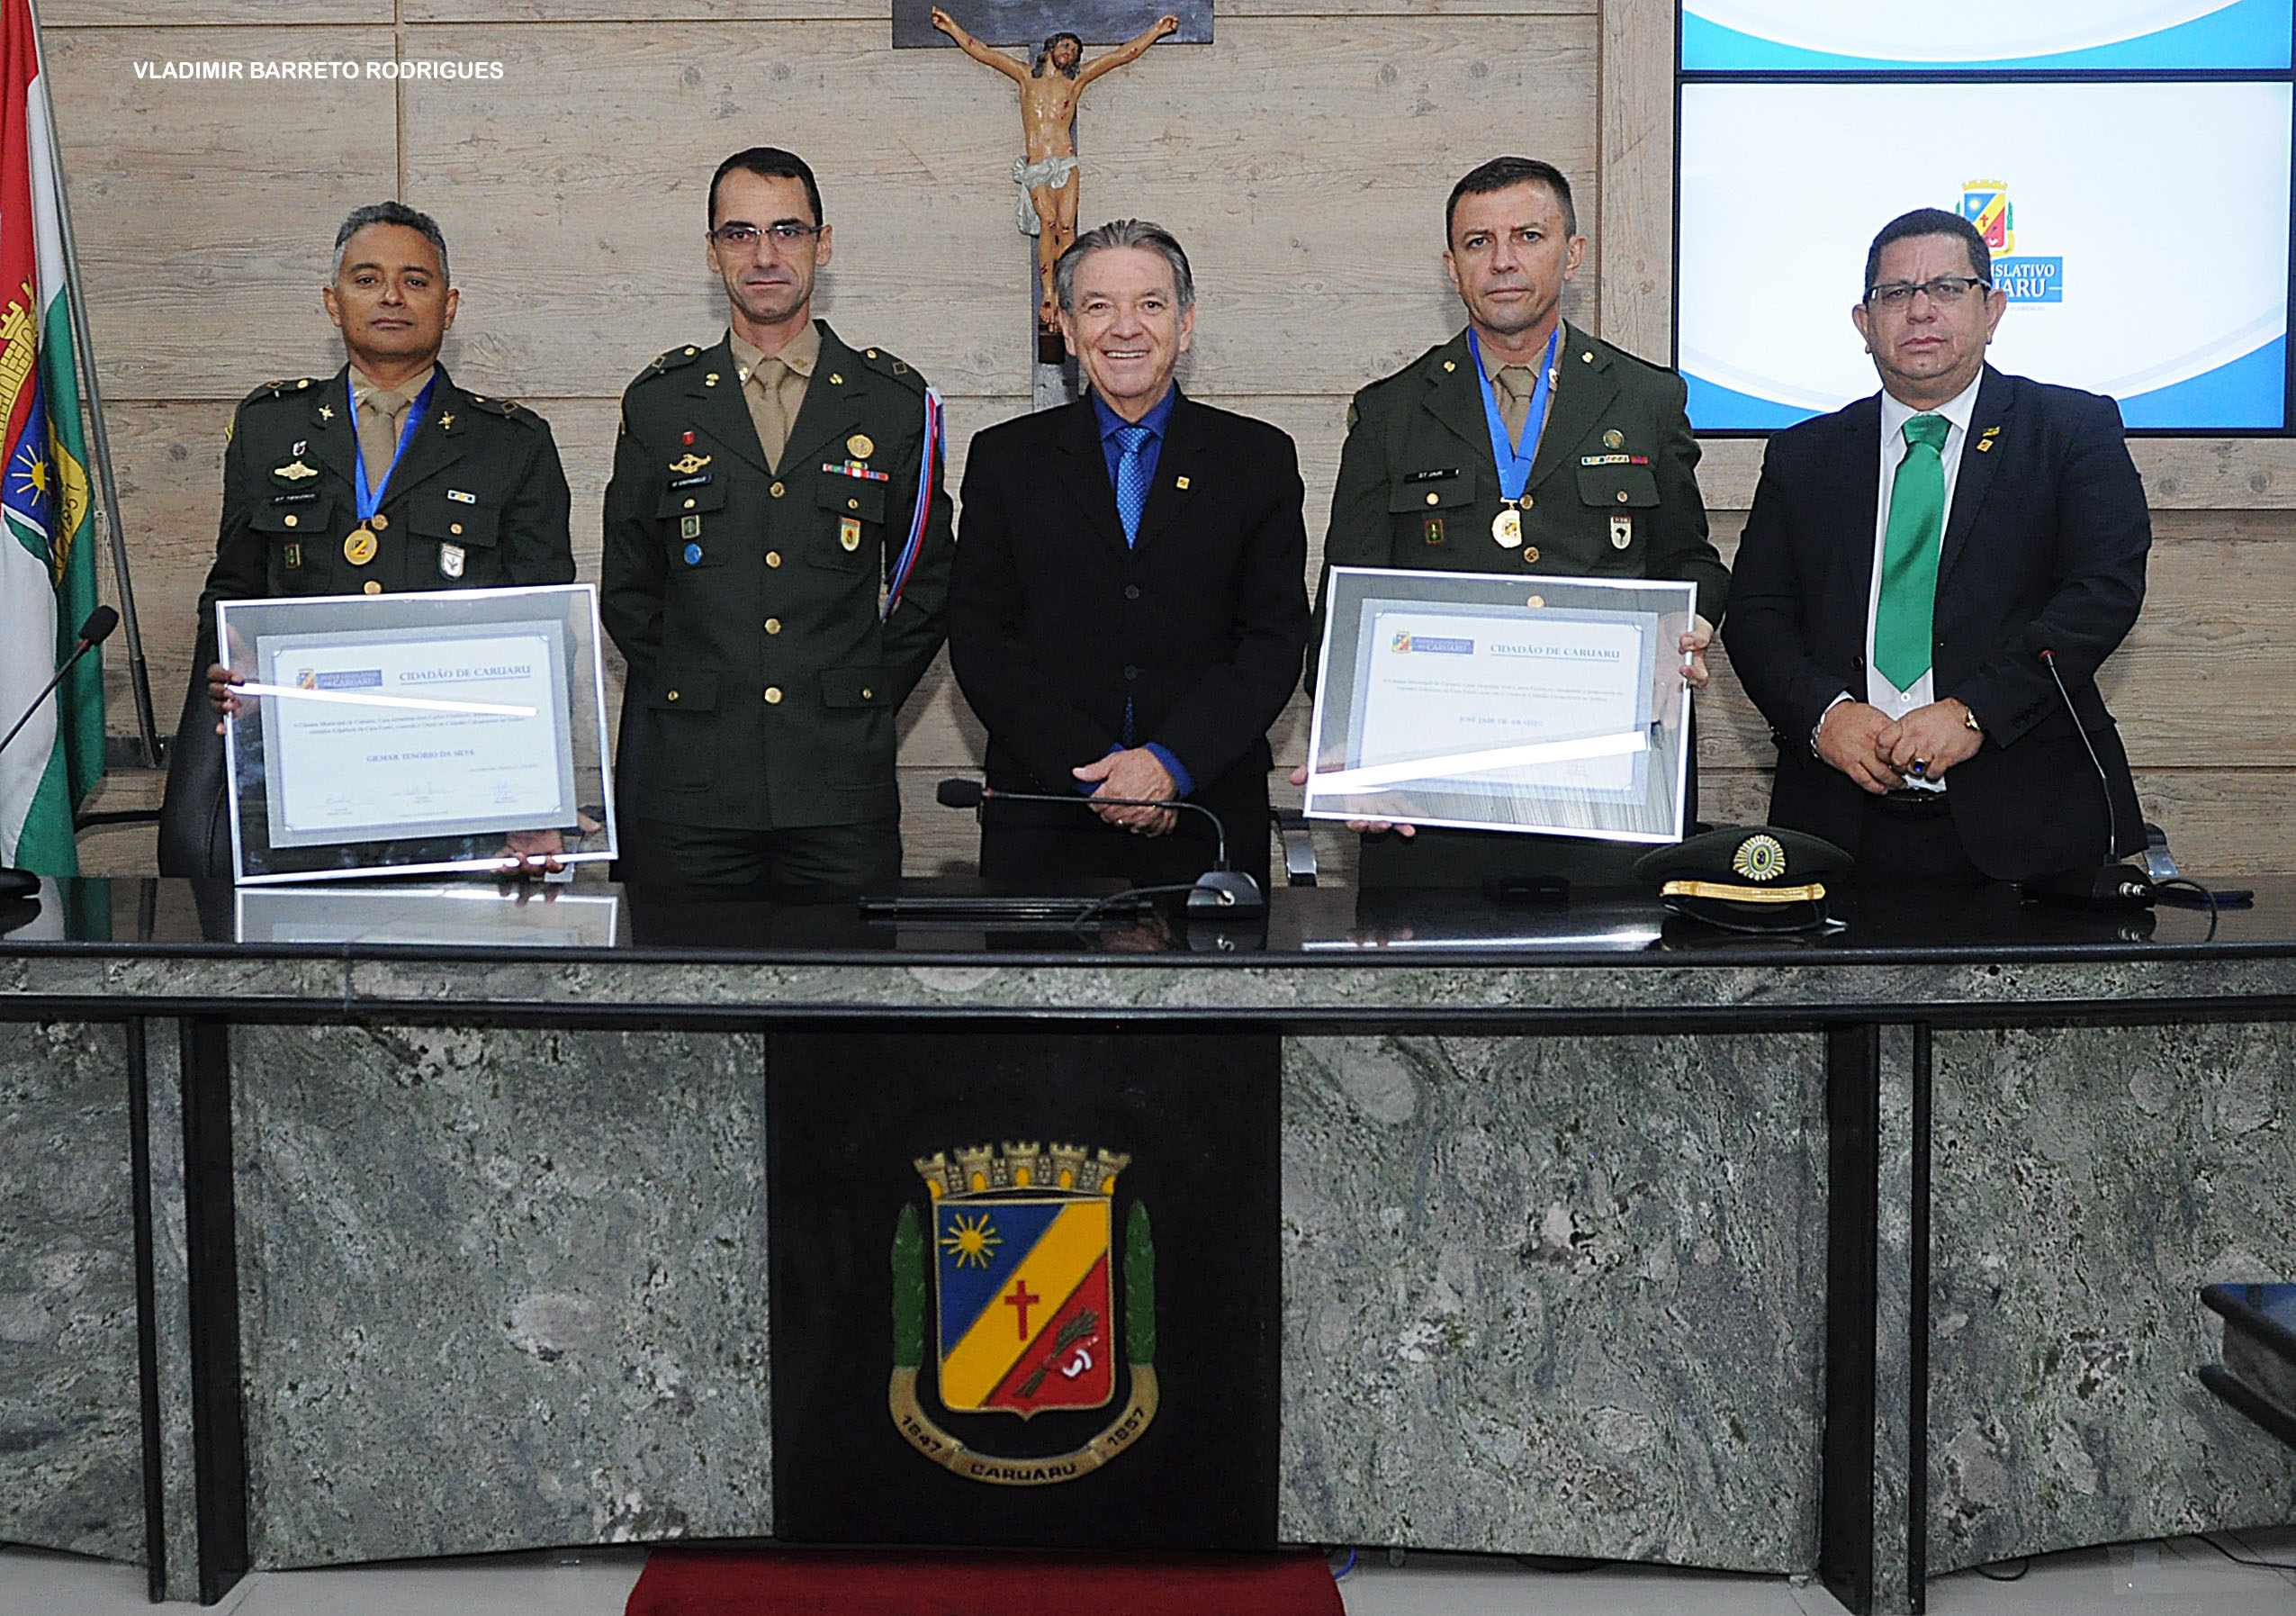 Militares são homenageados na Câmara Municipal de Caruaru